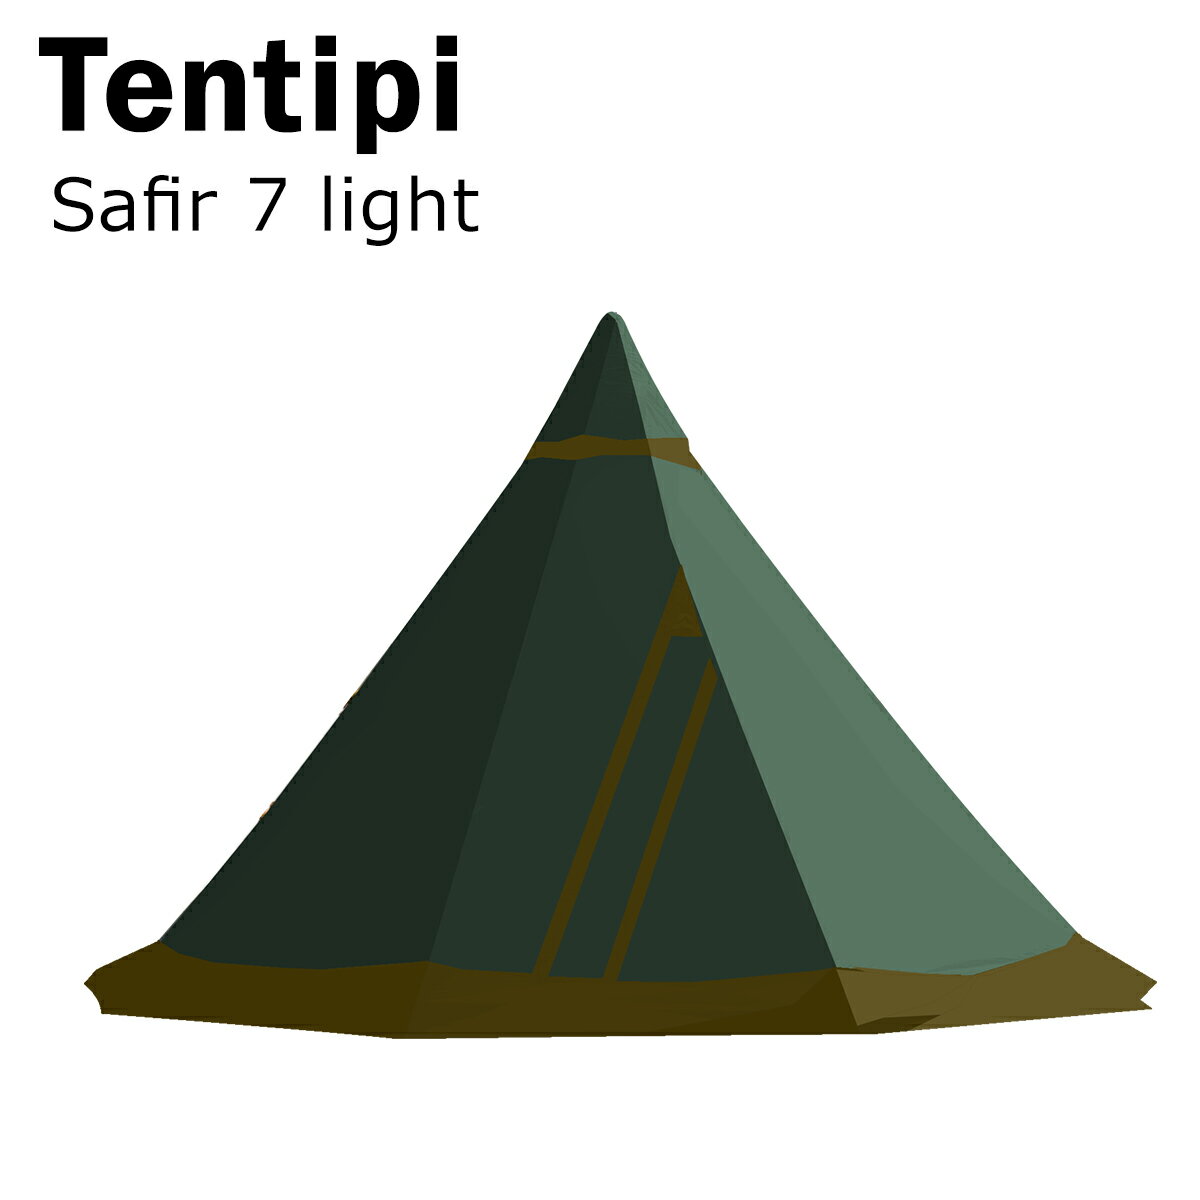 【クーポン4種あり】テンティピ サファイア 7 light 10750 Safir テント ワンポール 軽量 ティピーテント 就寝人数6-8人用 キャンプ オールシーズン対応 Tentipi